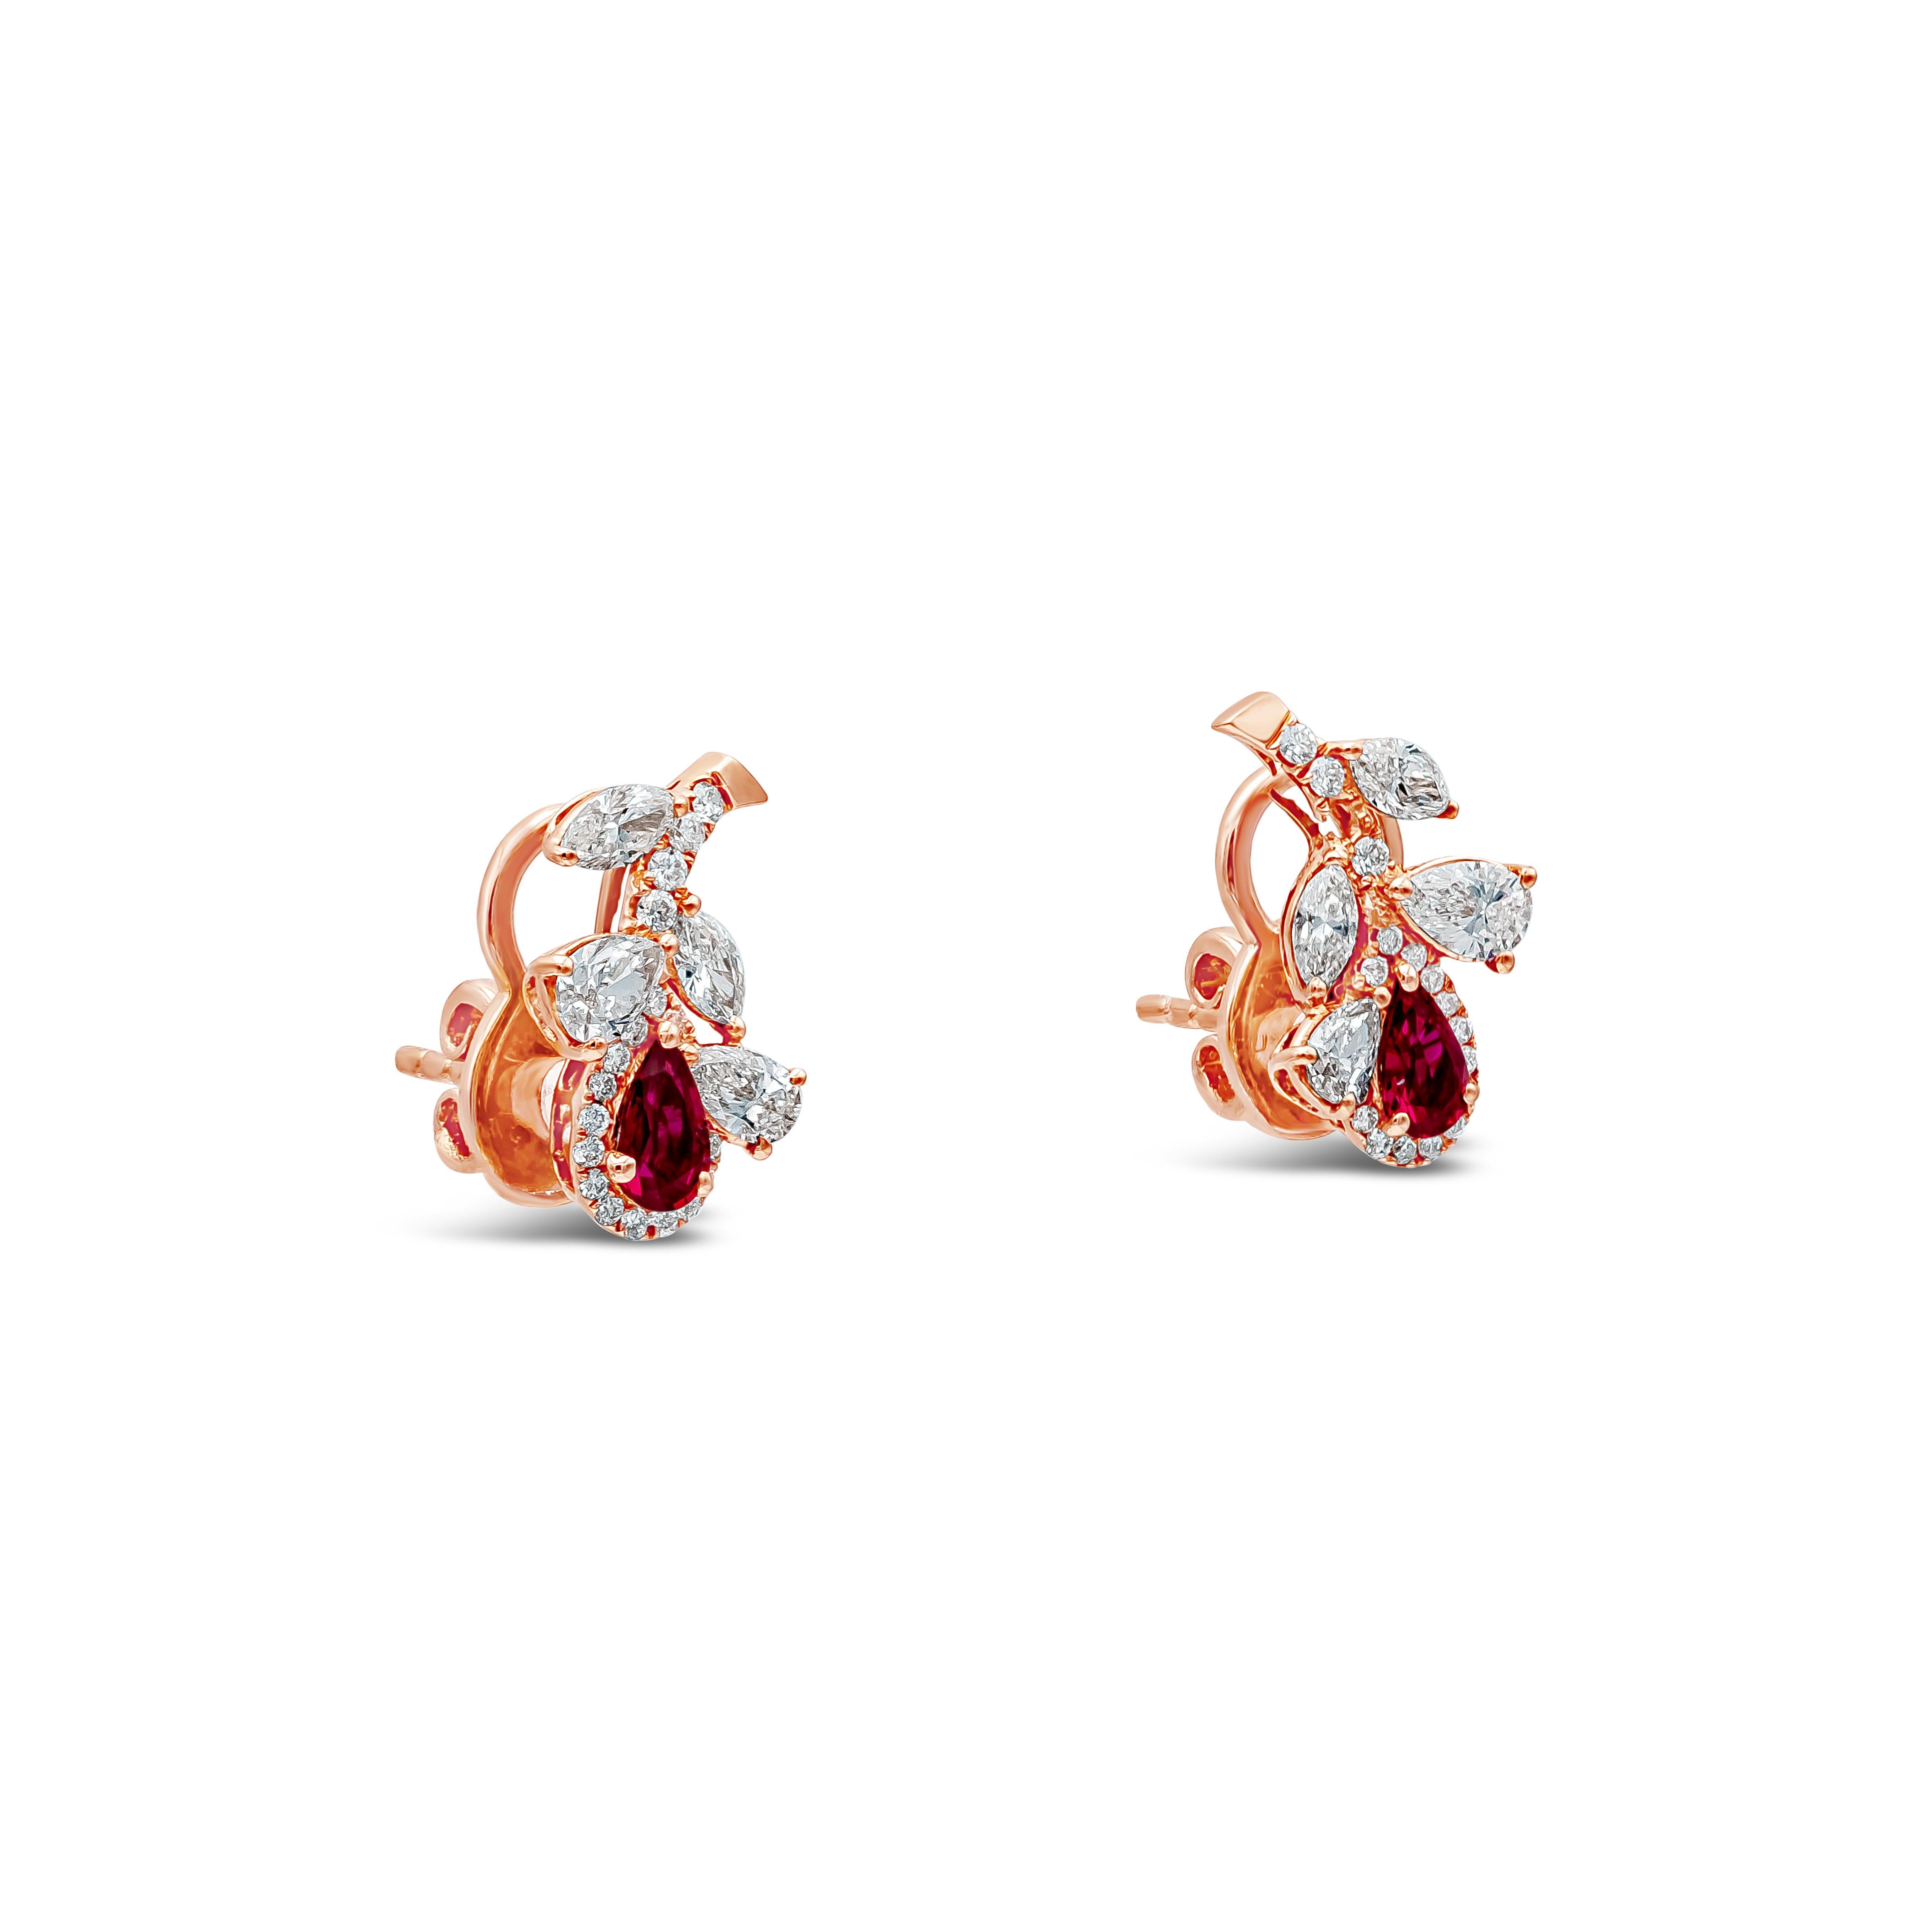 Une paire de boucles d'oreilles à la mode présentant un diamant de taille poire et marquise, des saphirs bleus et des rubis rouges en forme de poire sertis dans une fleur. La fleur est sertie d'un diamant de taille poire et marquise pesant environ